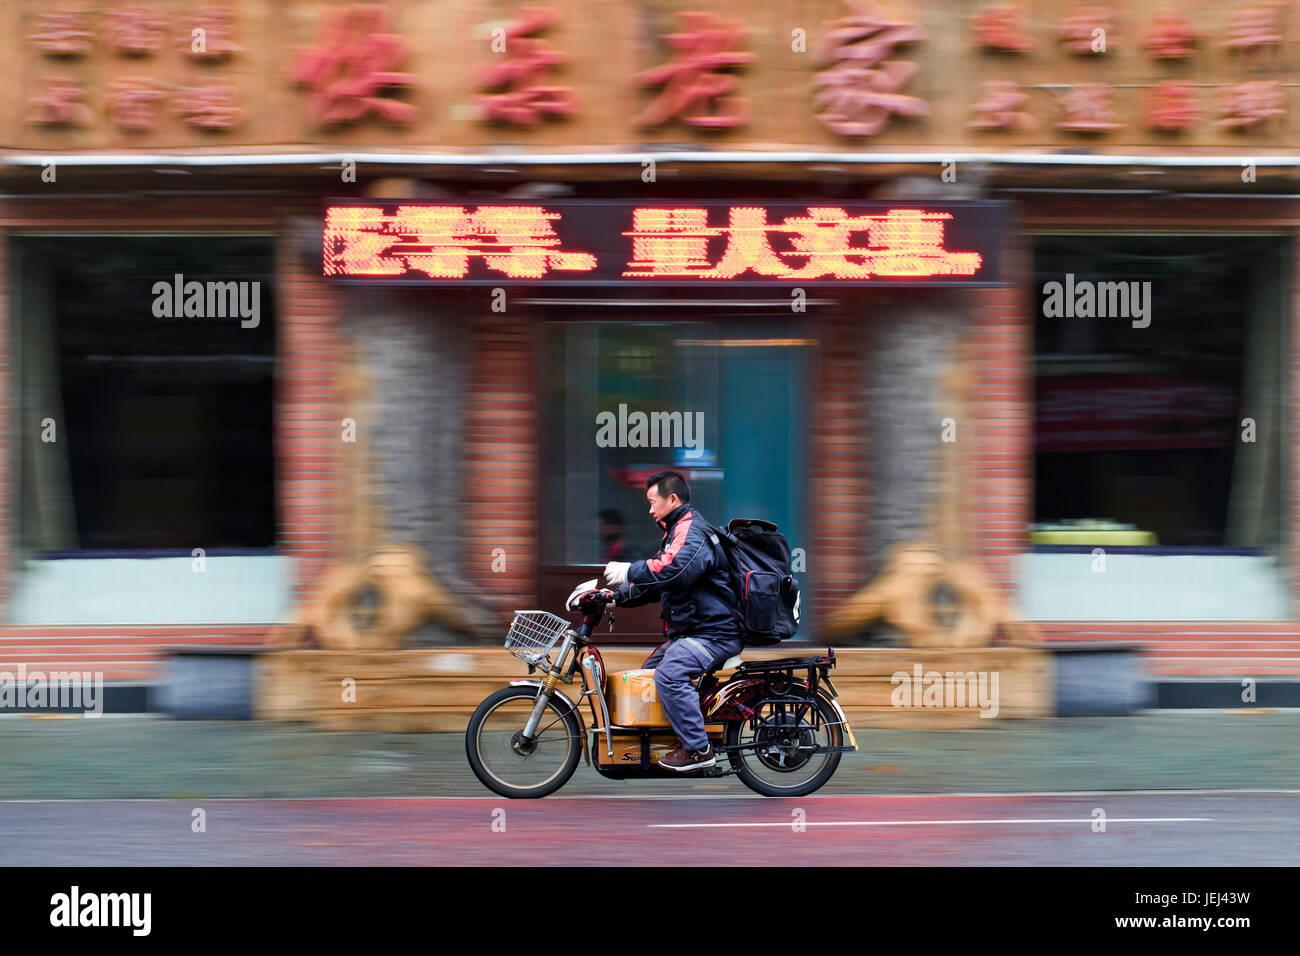 DALIAN-NOV 11, 2012. Homme sur un vélo électrique. Les vélos électriques sont gonflés dans les rues des villes chinoises, dont environ 120 millions. Banque D'Images